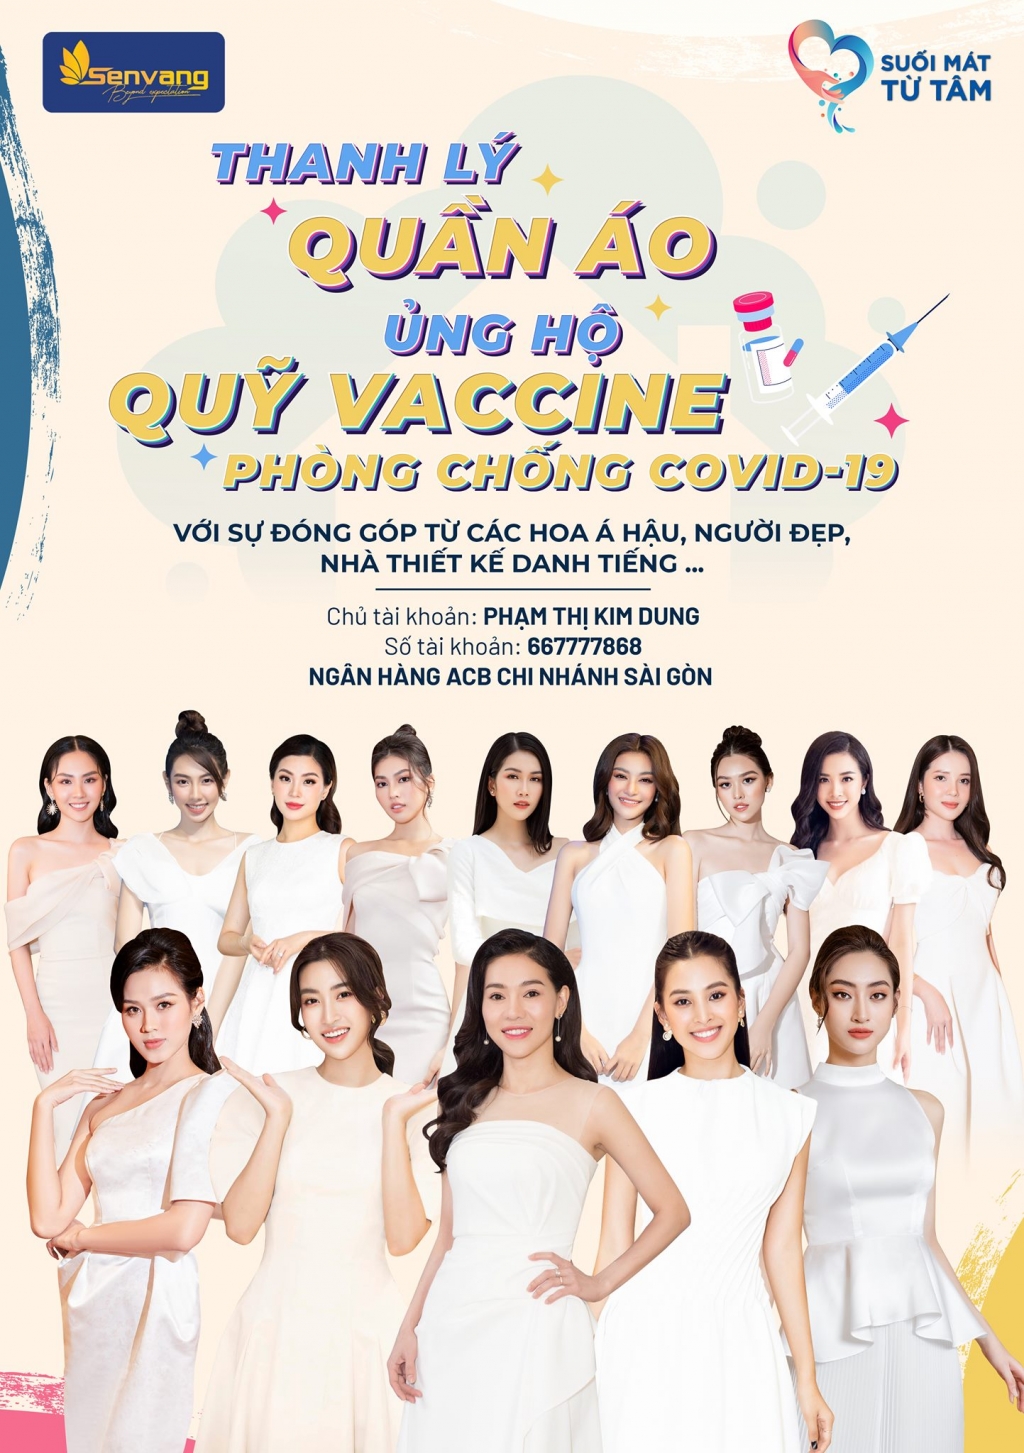 Dàn Hoa, Á hậu của CLB Suối mát từ tâm thanh lý quần áo ủng hộ quỹ vaccine